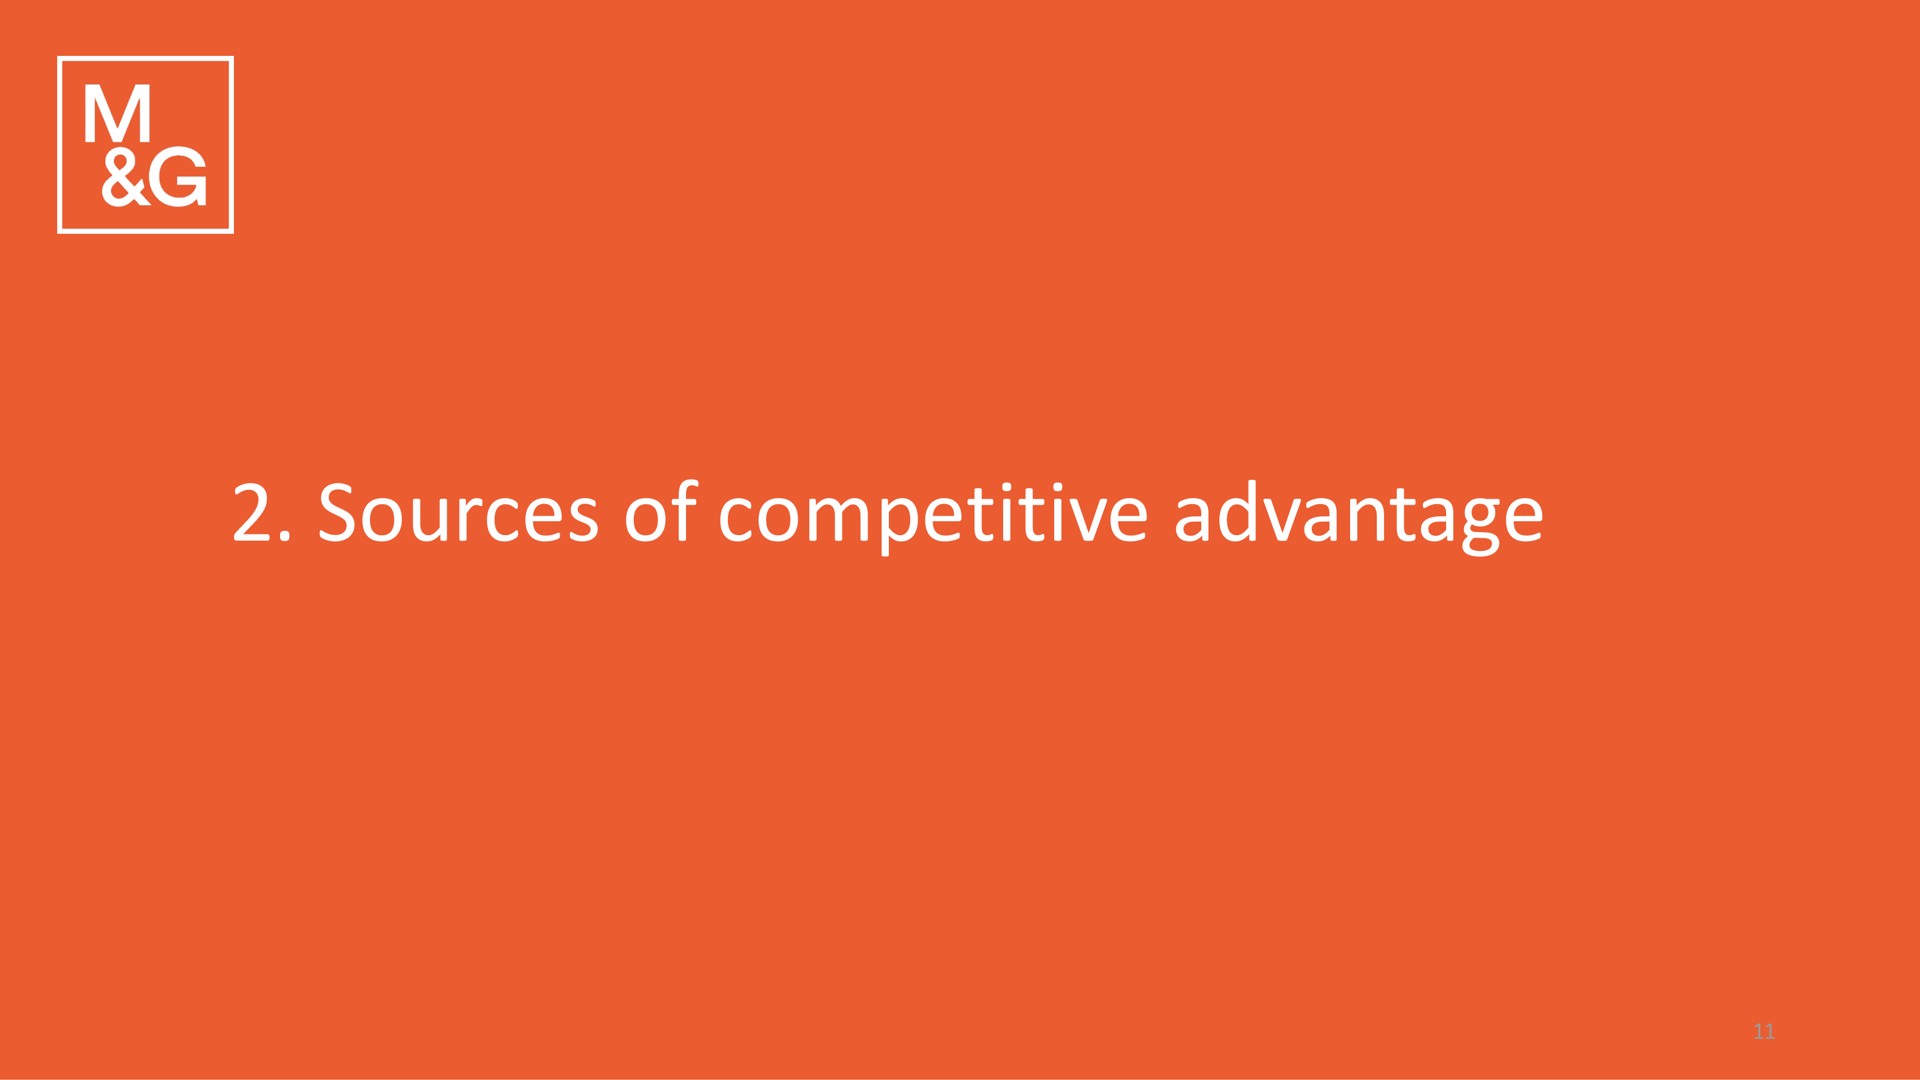 sources of competitive advantage | M&G